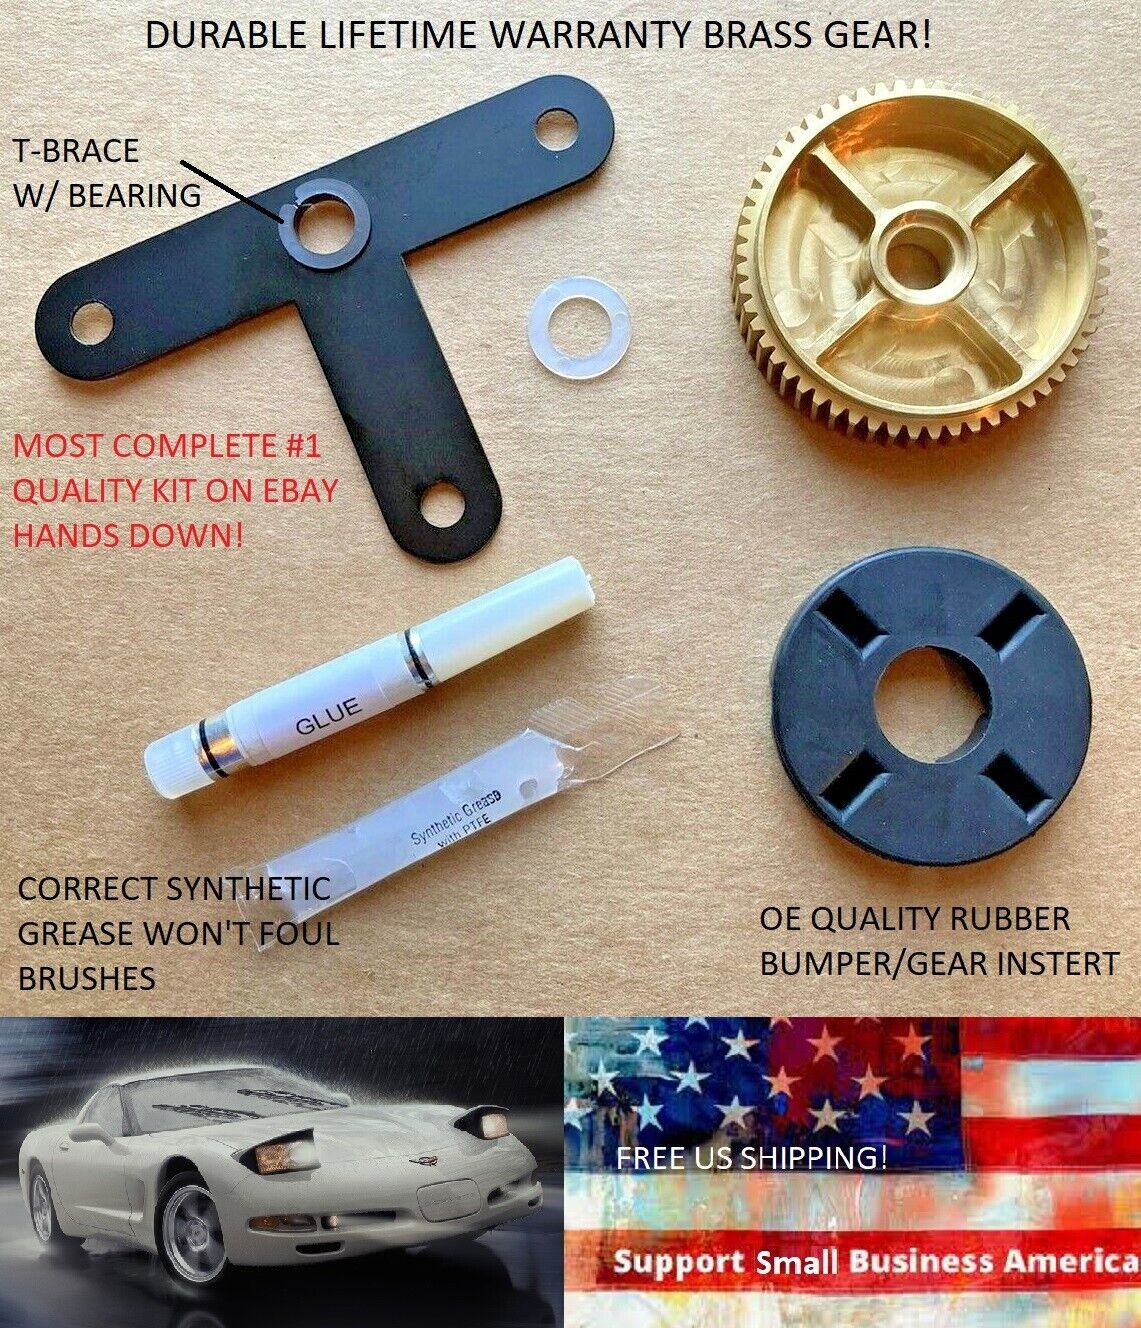 00-04 Corvette 93-02 Firebird Headlight Motor Repair Kit Brass Gear+Instructions